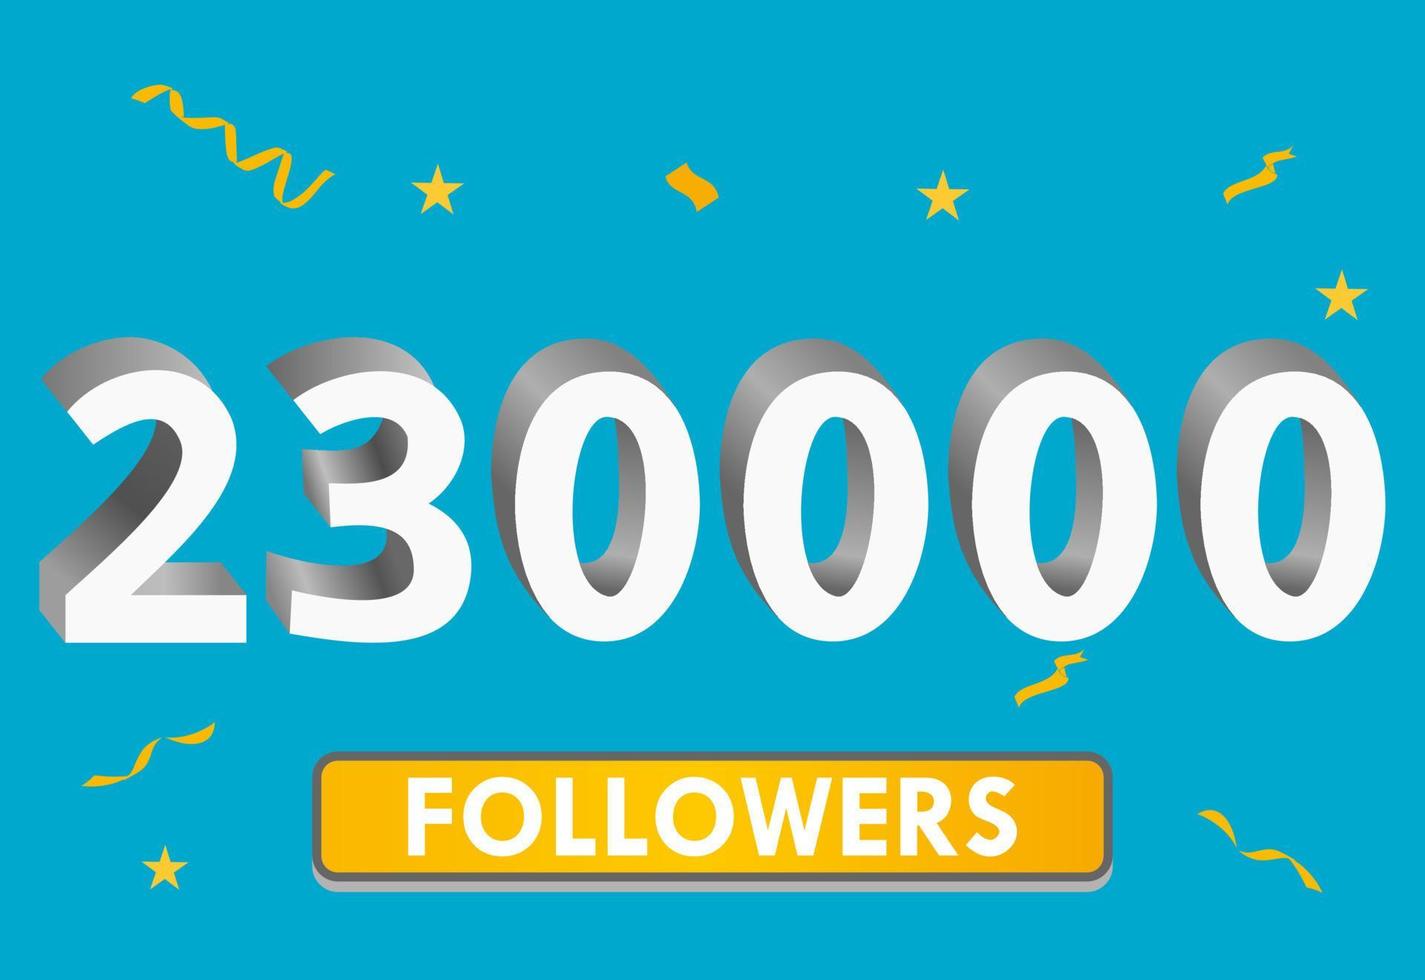 illustration 3d-nummer för sociala medier 230k likes tack, firar prenumeranter fans. banner med 230 000 följare vektor